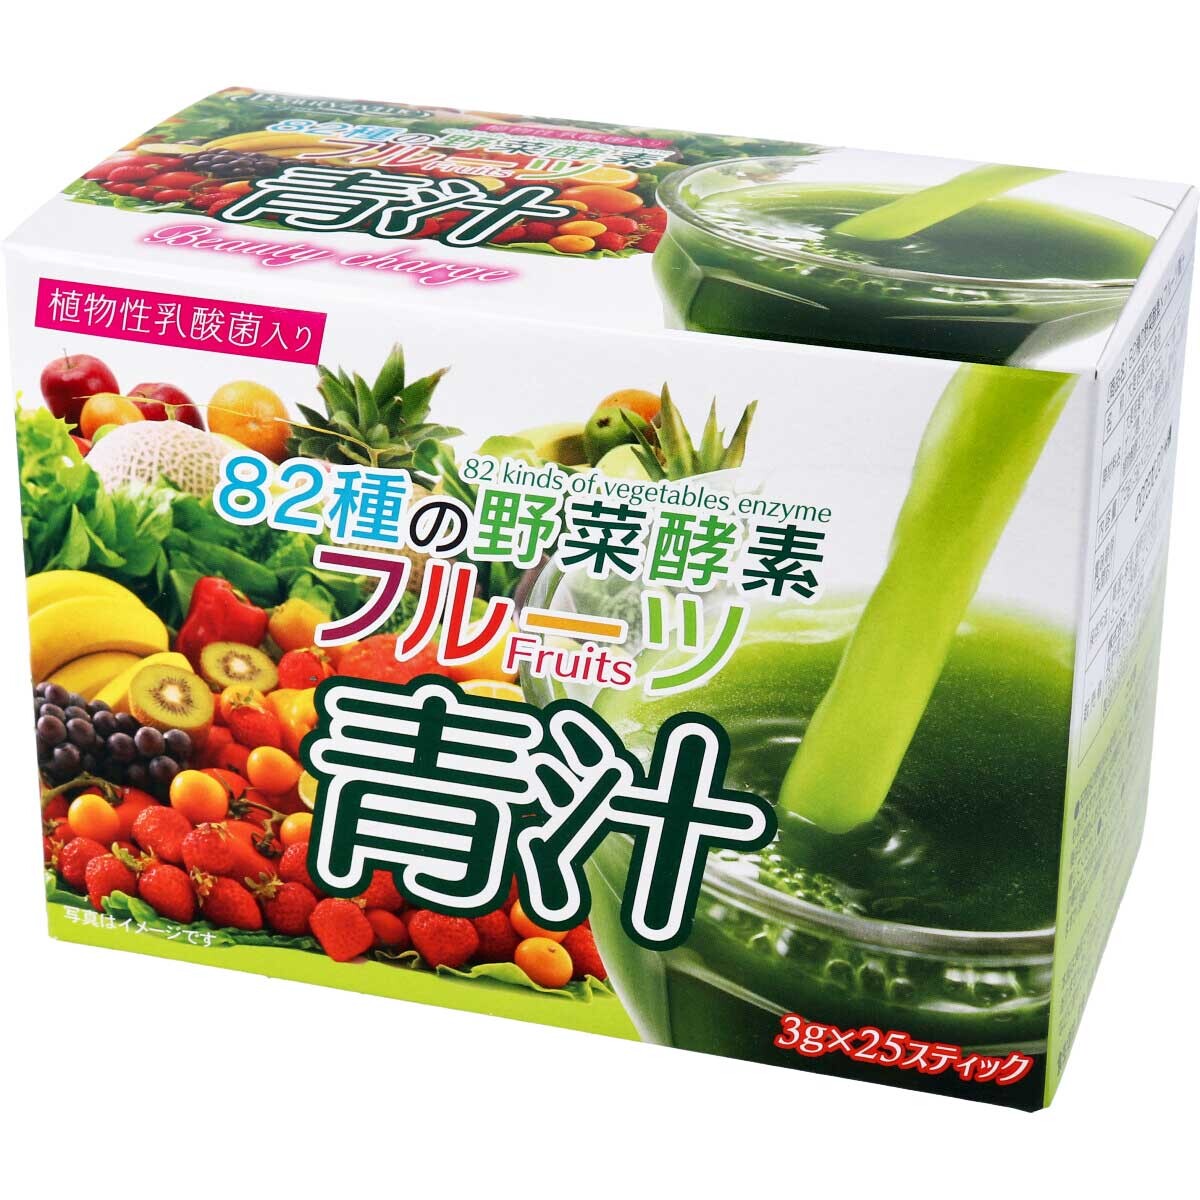 日本 HIKARI 82種植物酵素果蔬汁3g x 25支 青汁